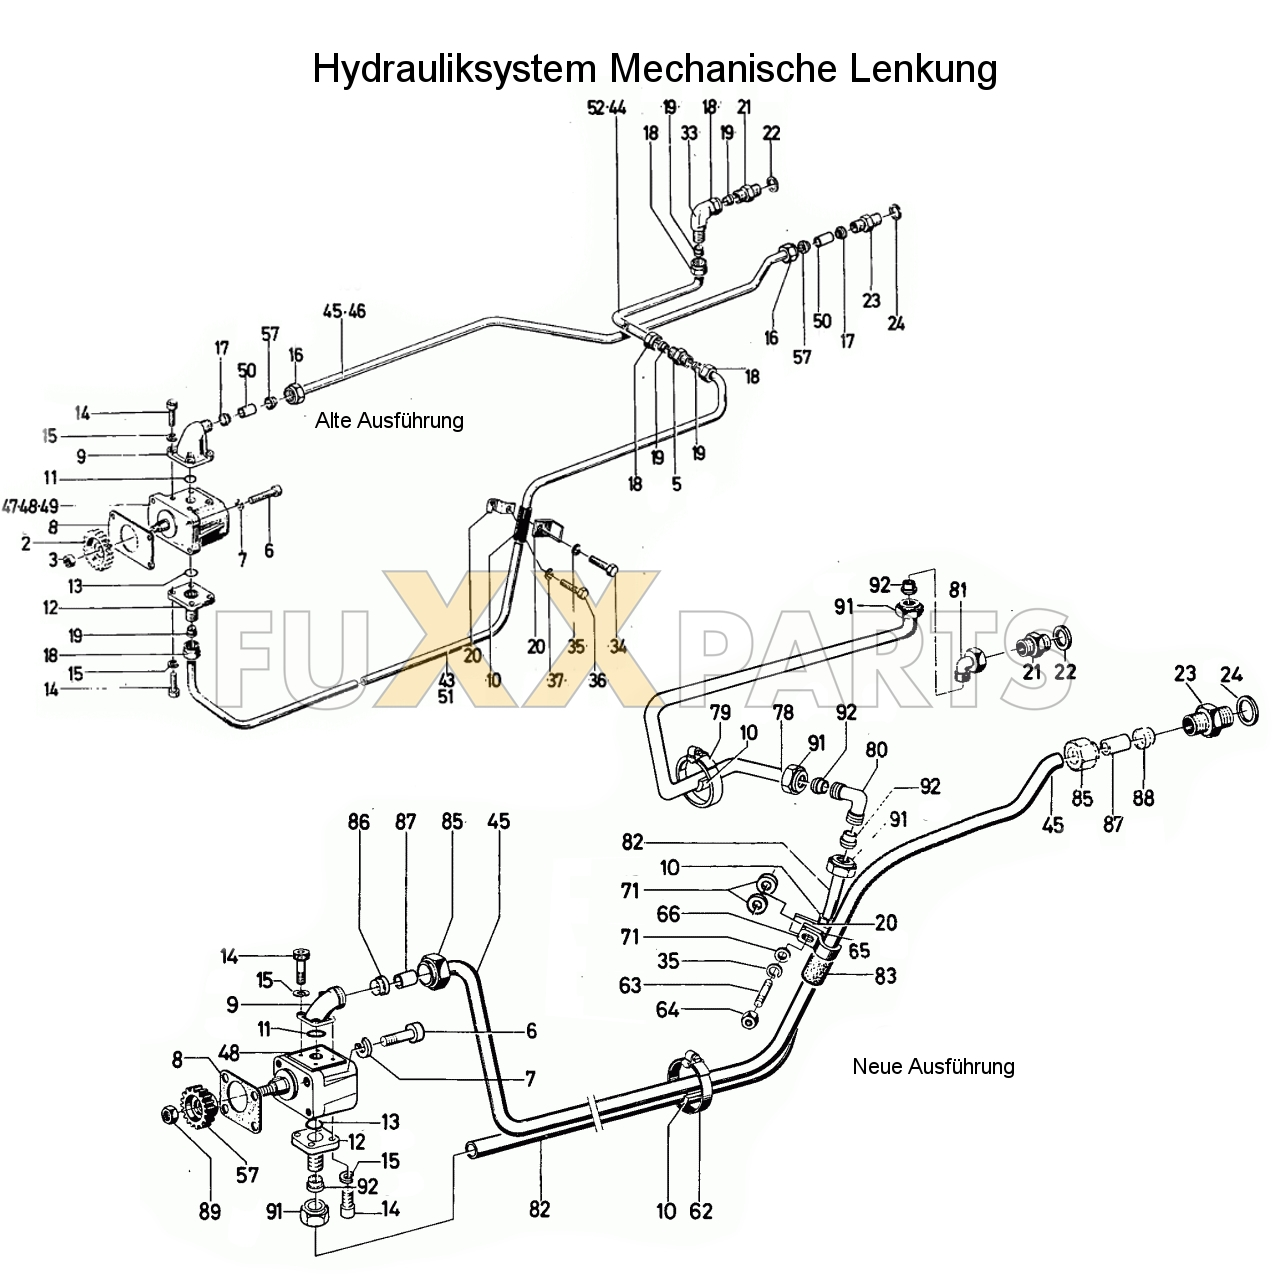 D 6806 Hydrauliksystem Mechanische Lenkung